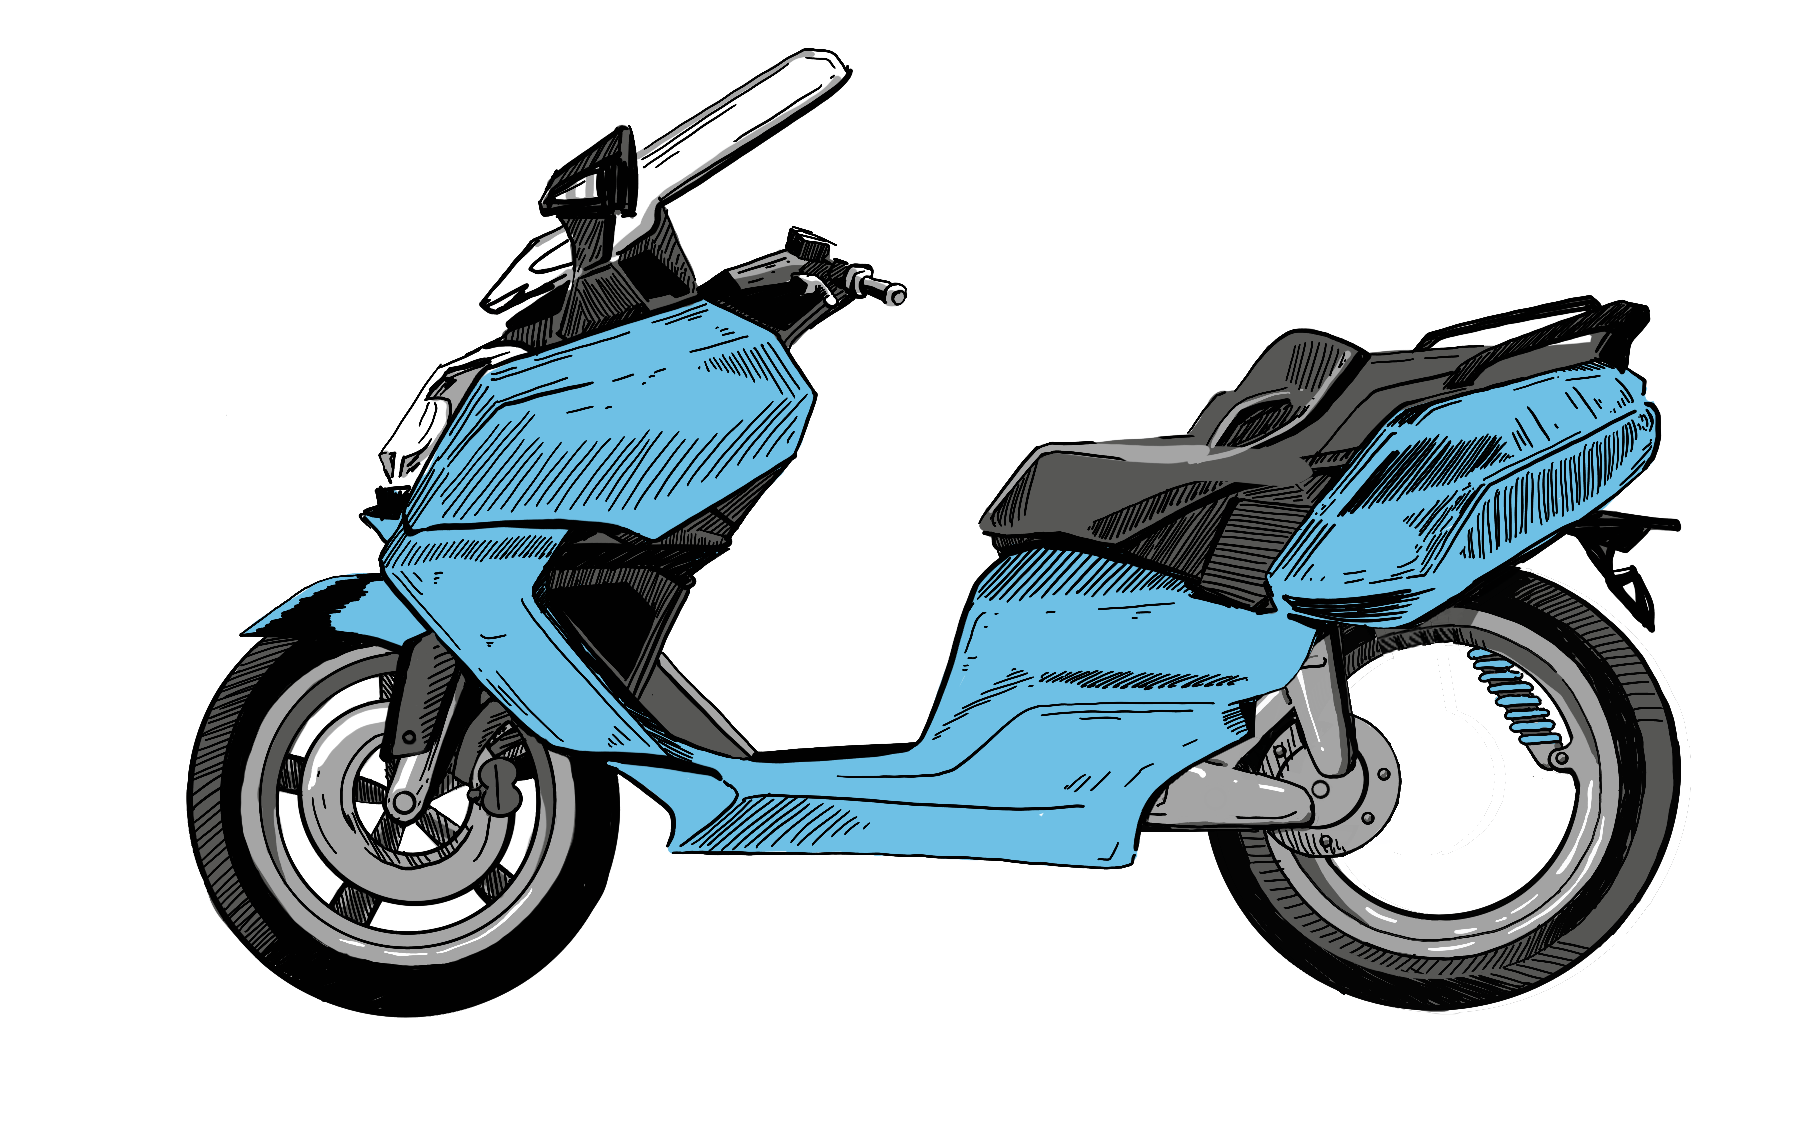 Illustration eines Rollers mit Traction-X, eine revolutionären Antriebstechnologie für exzellente Fahreigenschaften von Motorrollern.